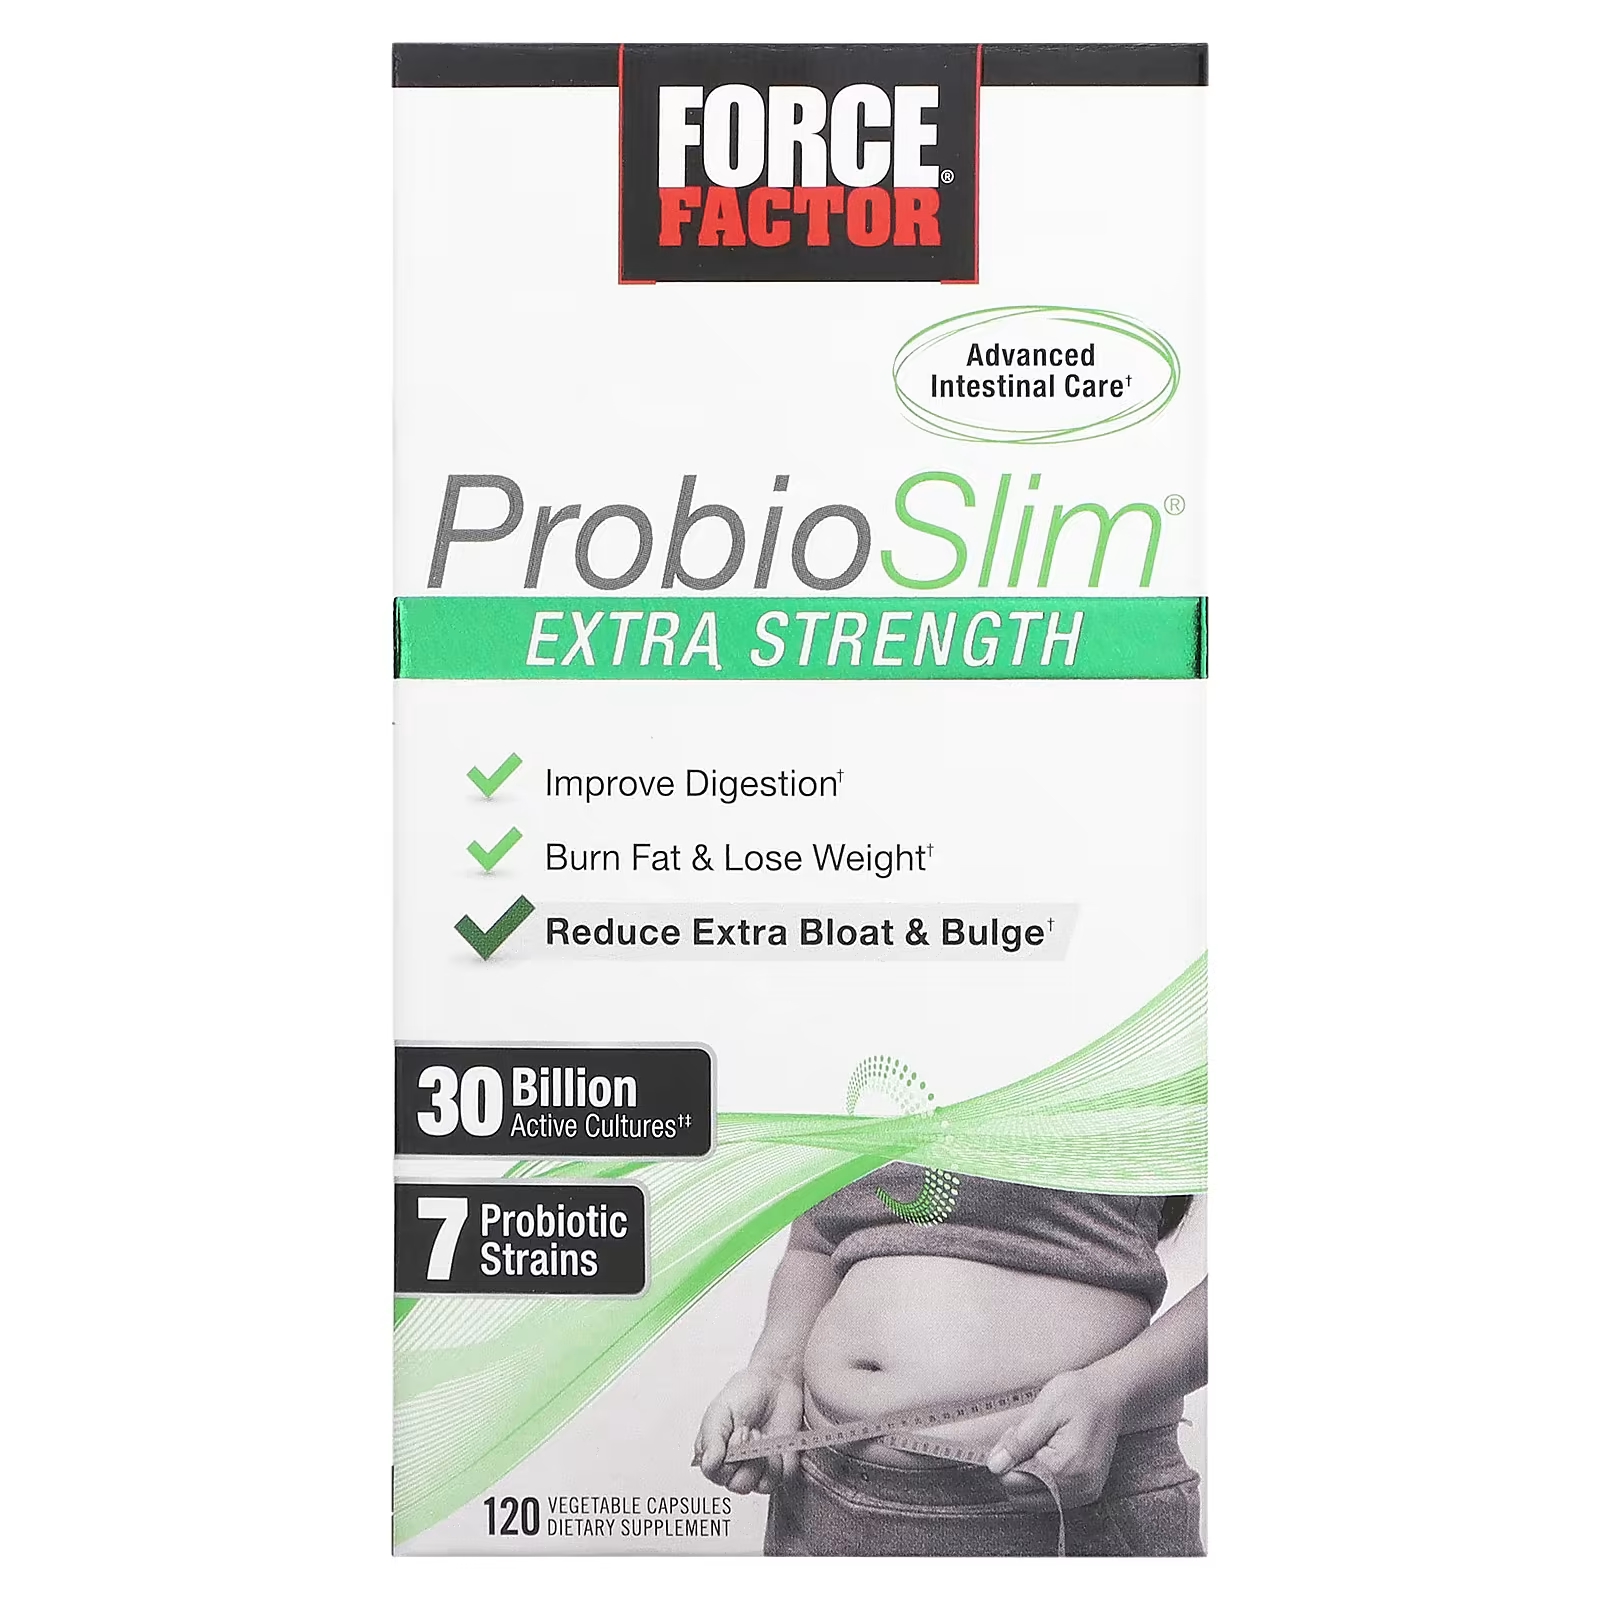 Force Factor ProbioSlim Extra Strength 30 миллиардов КОЕ, 120 растительных капсул force factor probioslim незаменимые питательные вещества для снижения веса 120 капсул